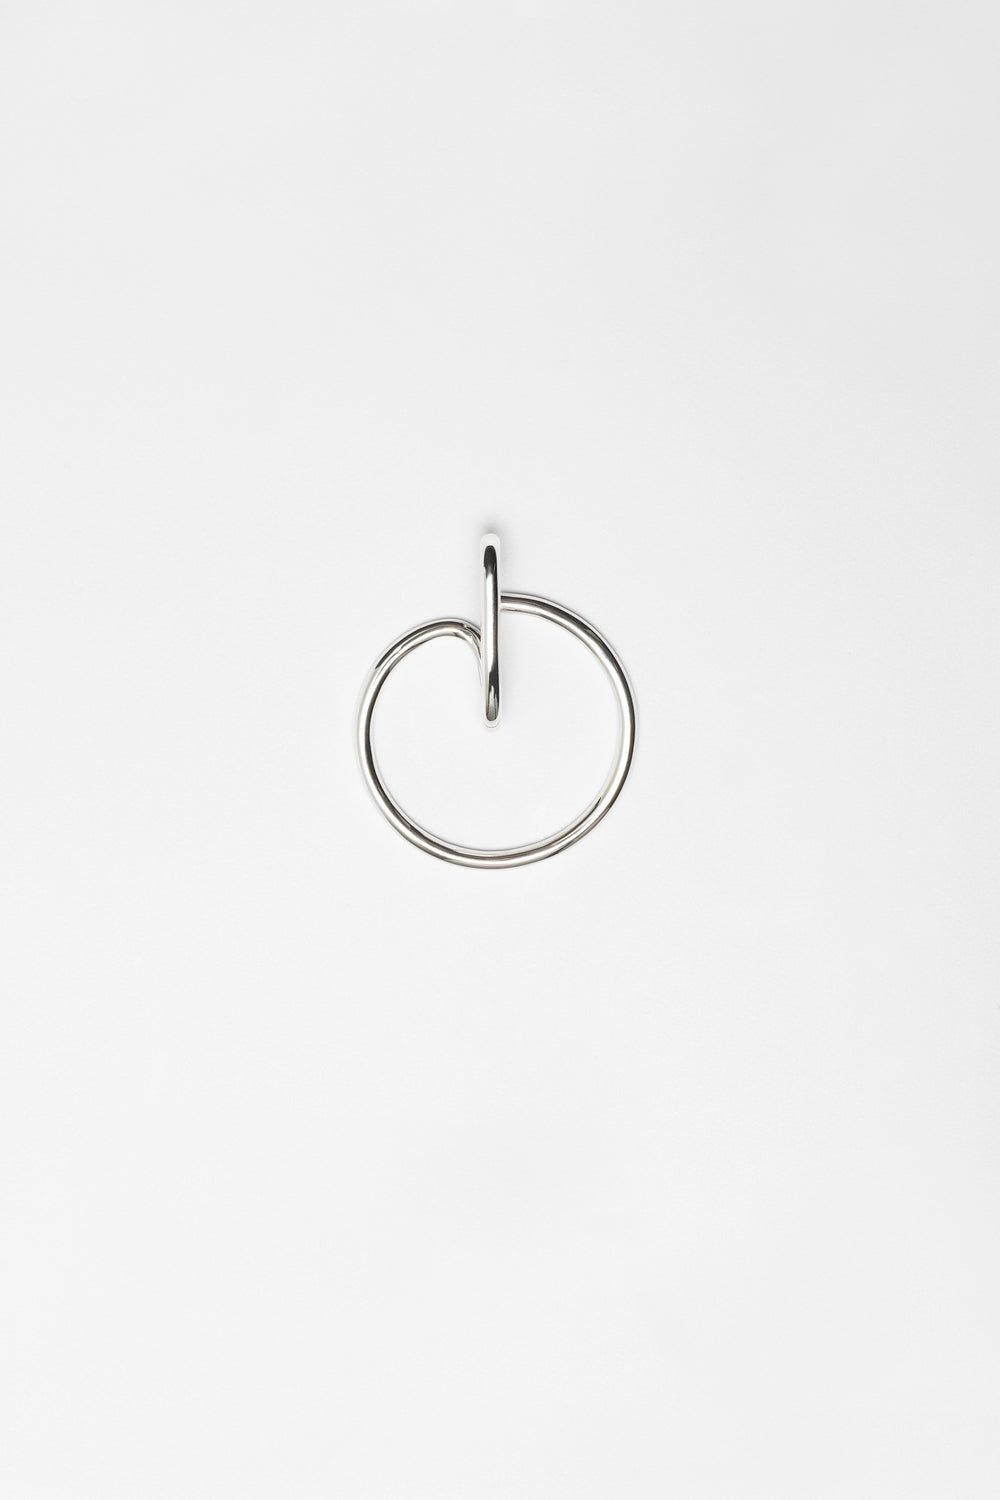 Polished wire earcuff. Silver jewelry handmade in Berlin.